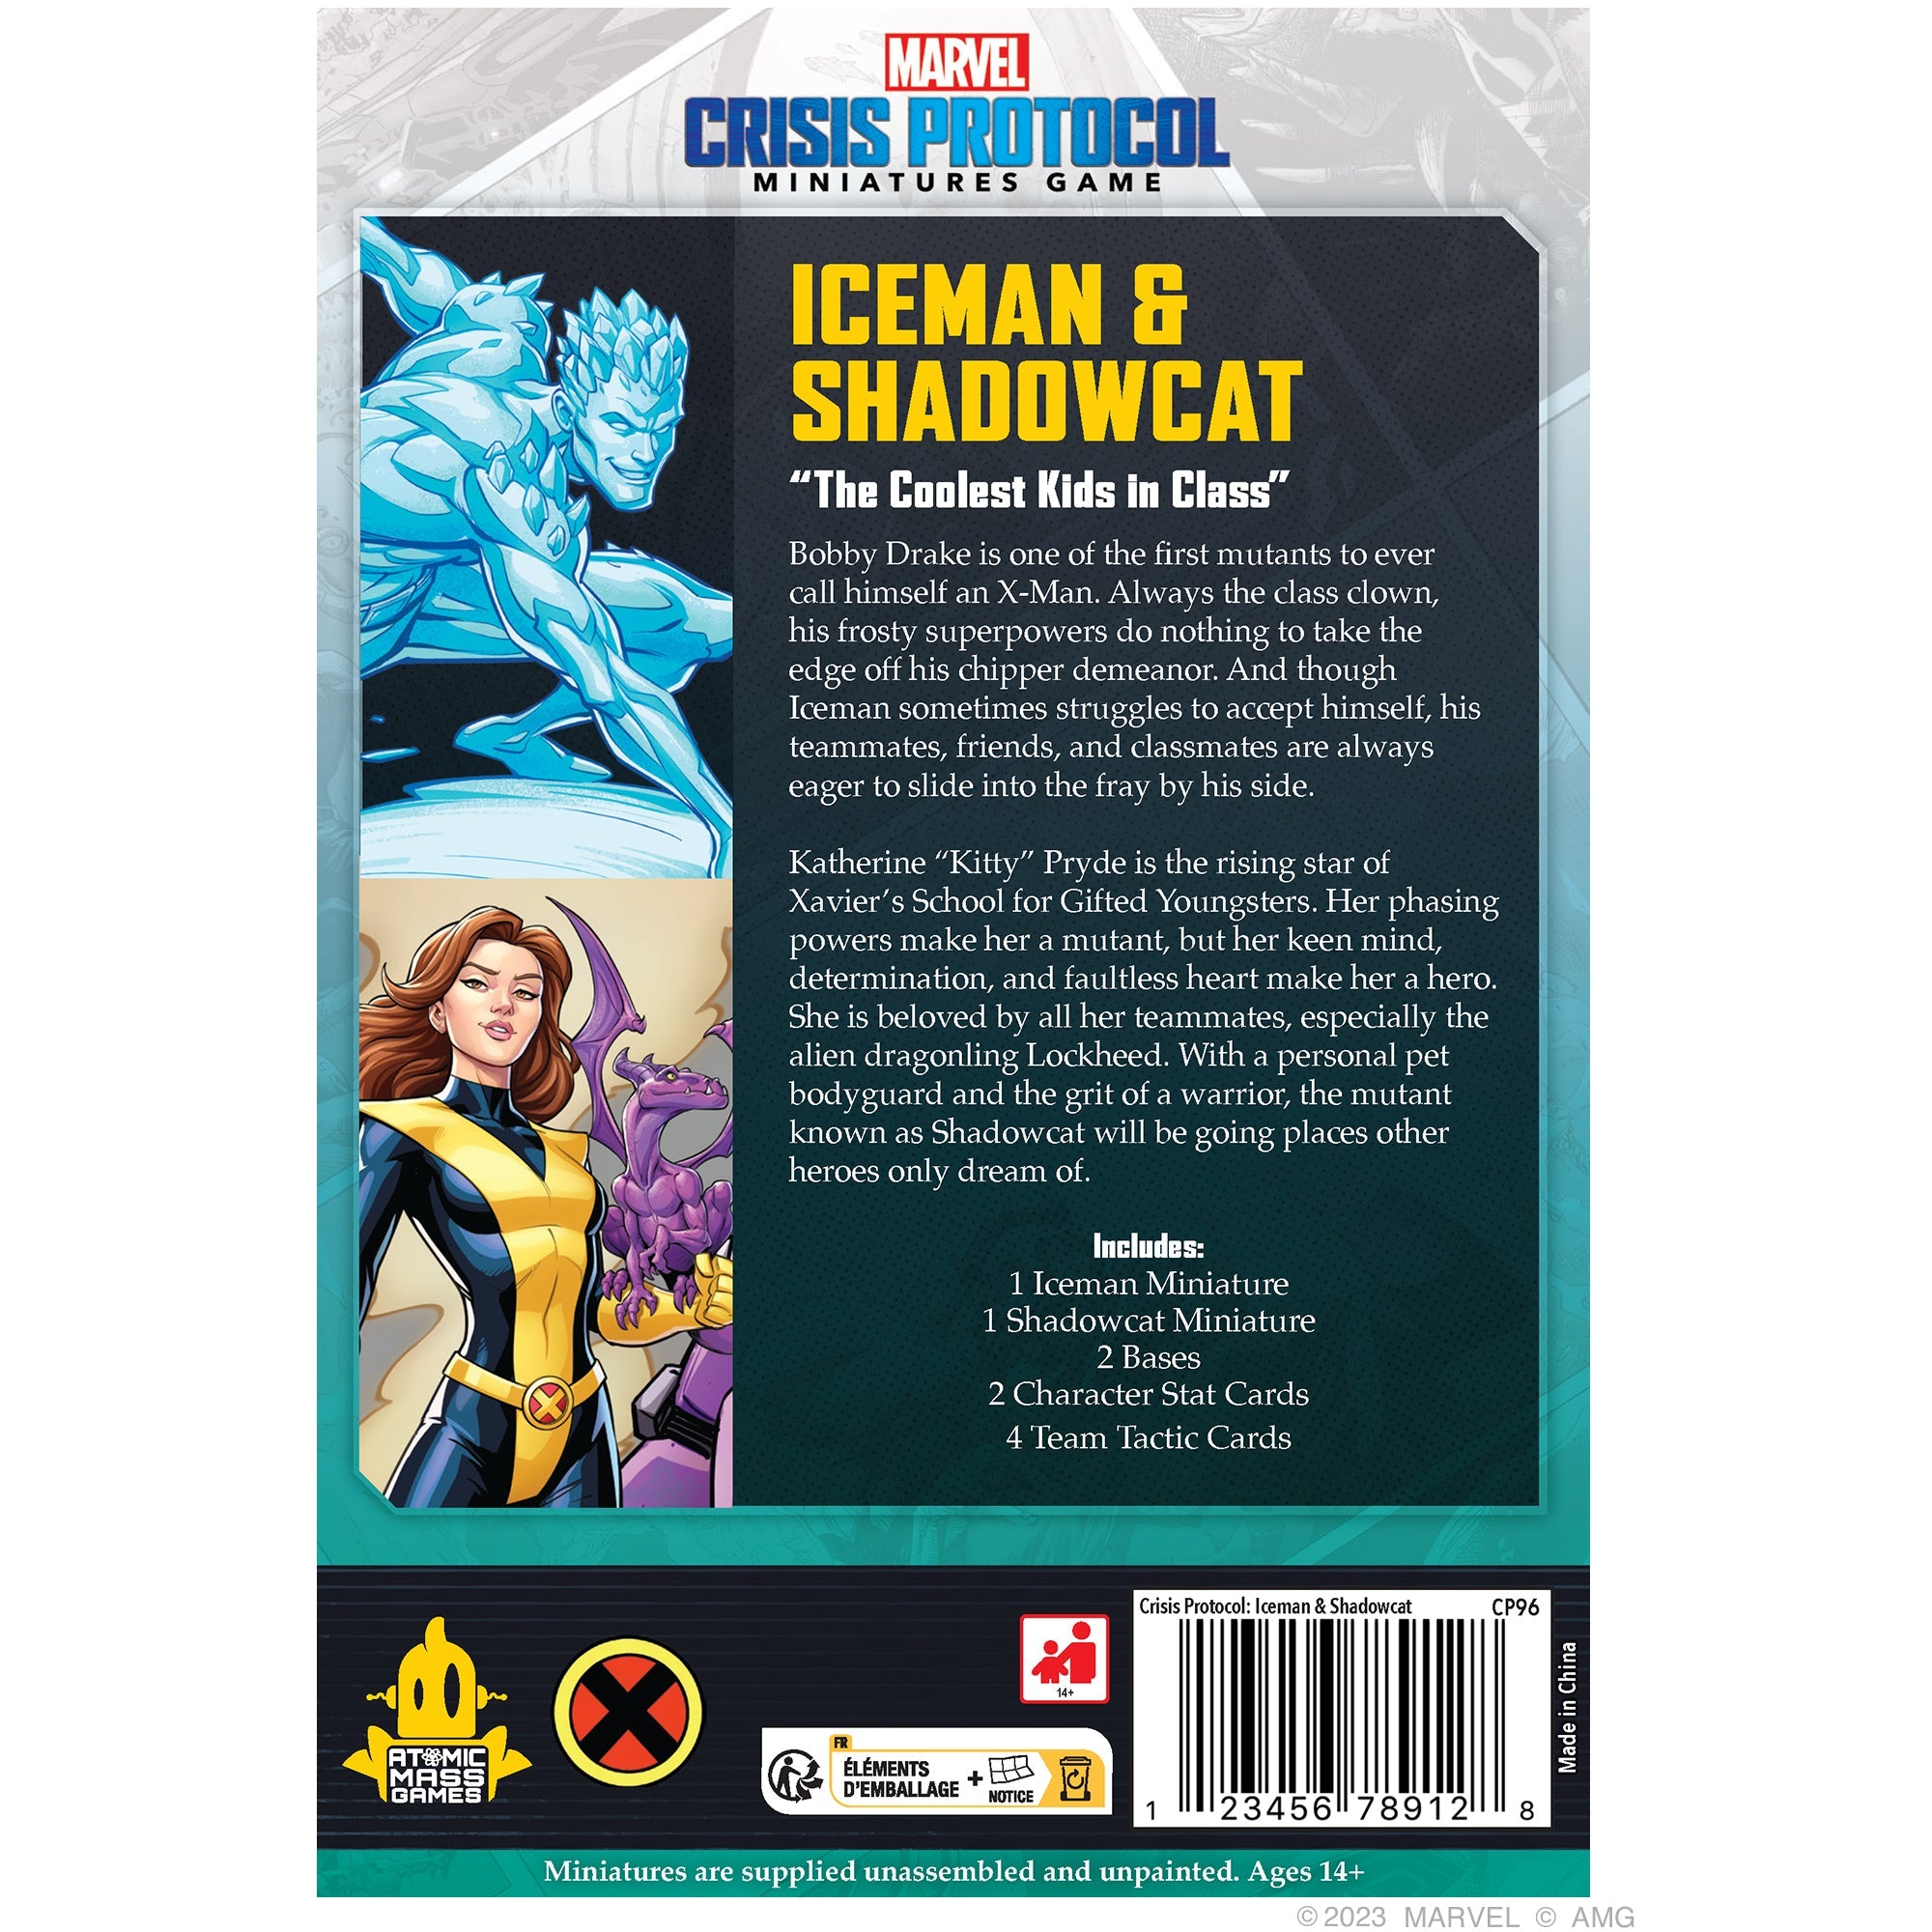 Marvel Crisis Protocol: Iceman and Shadowcat